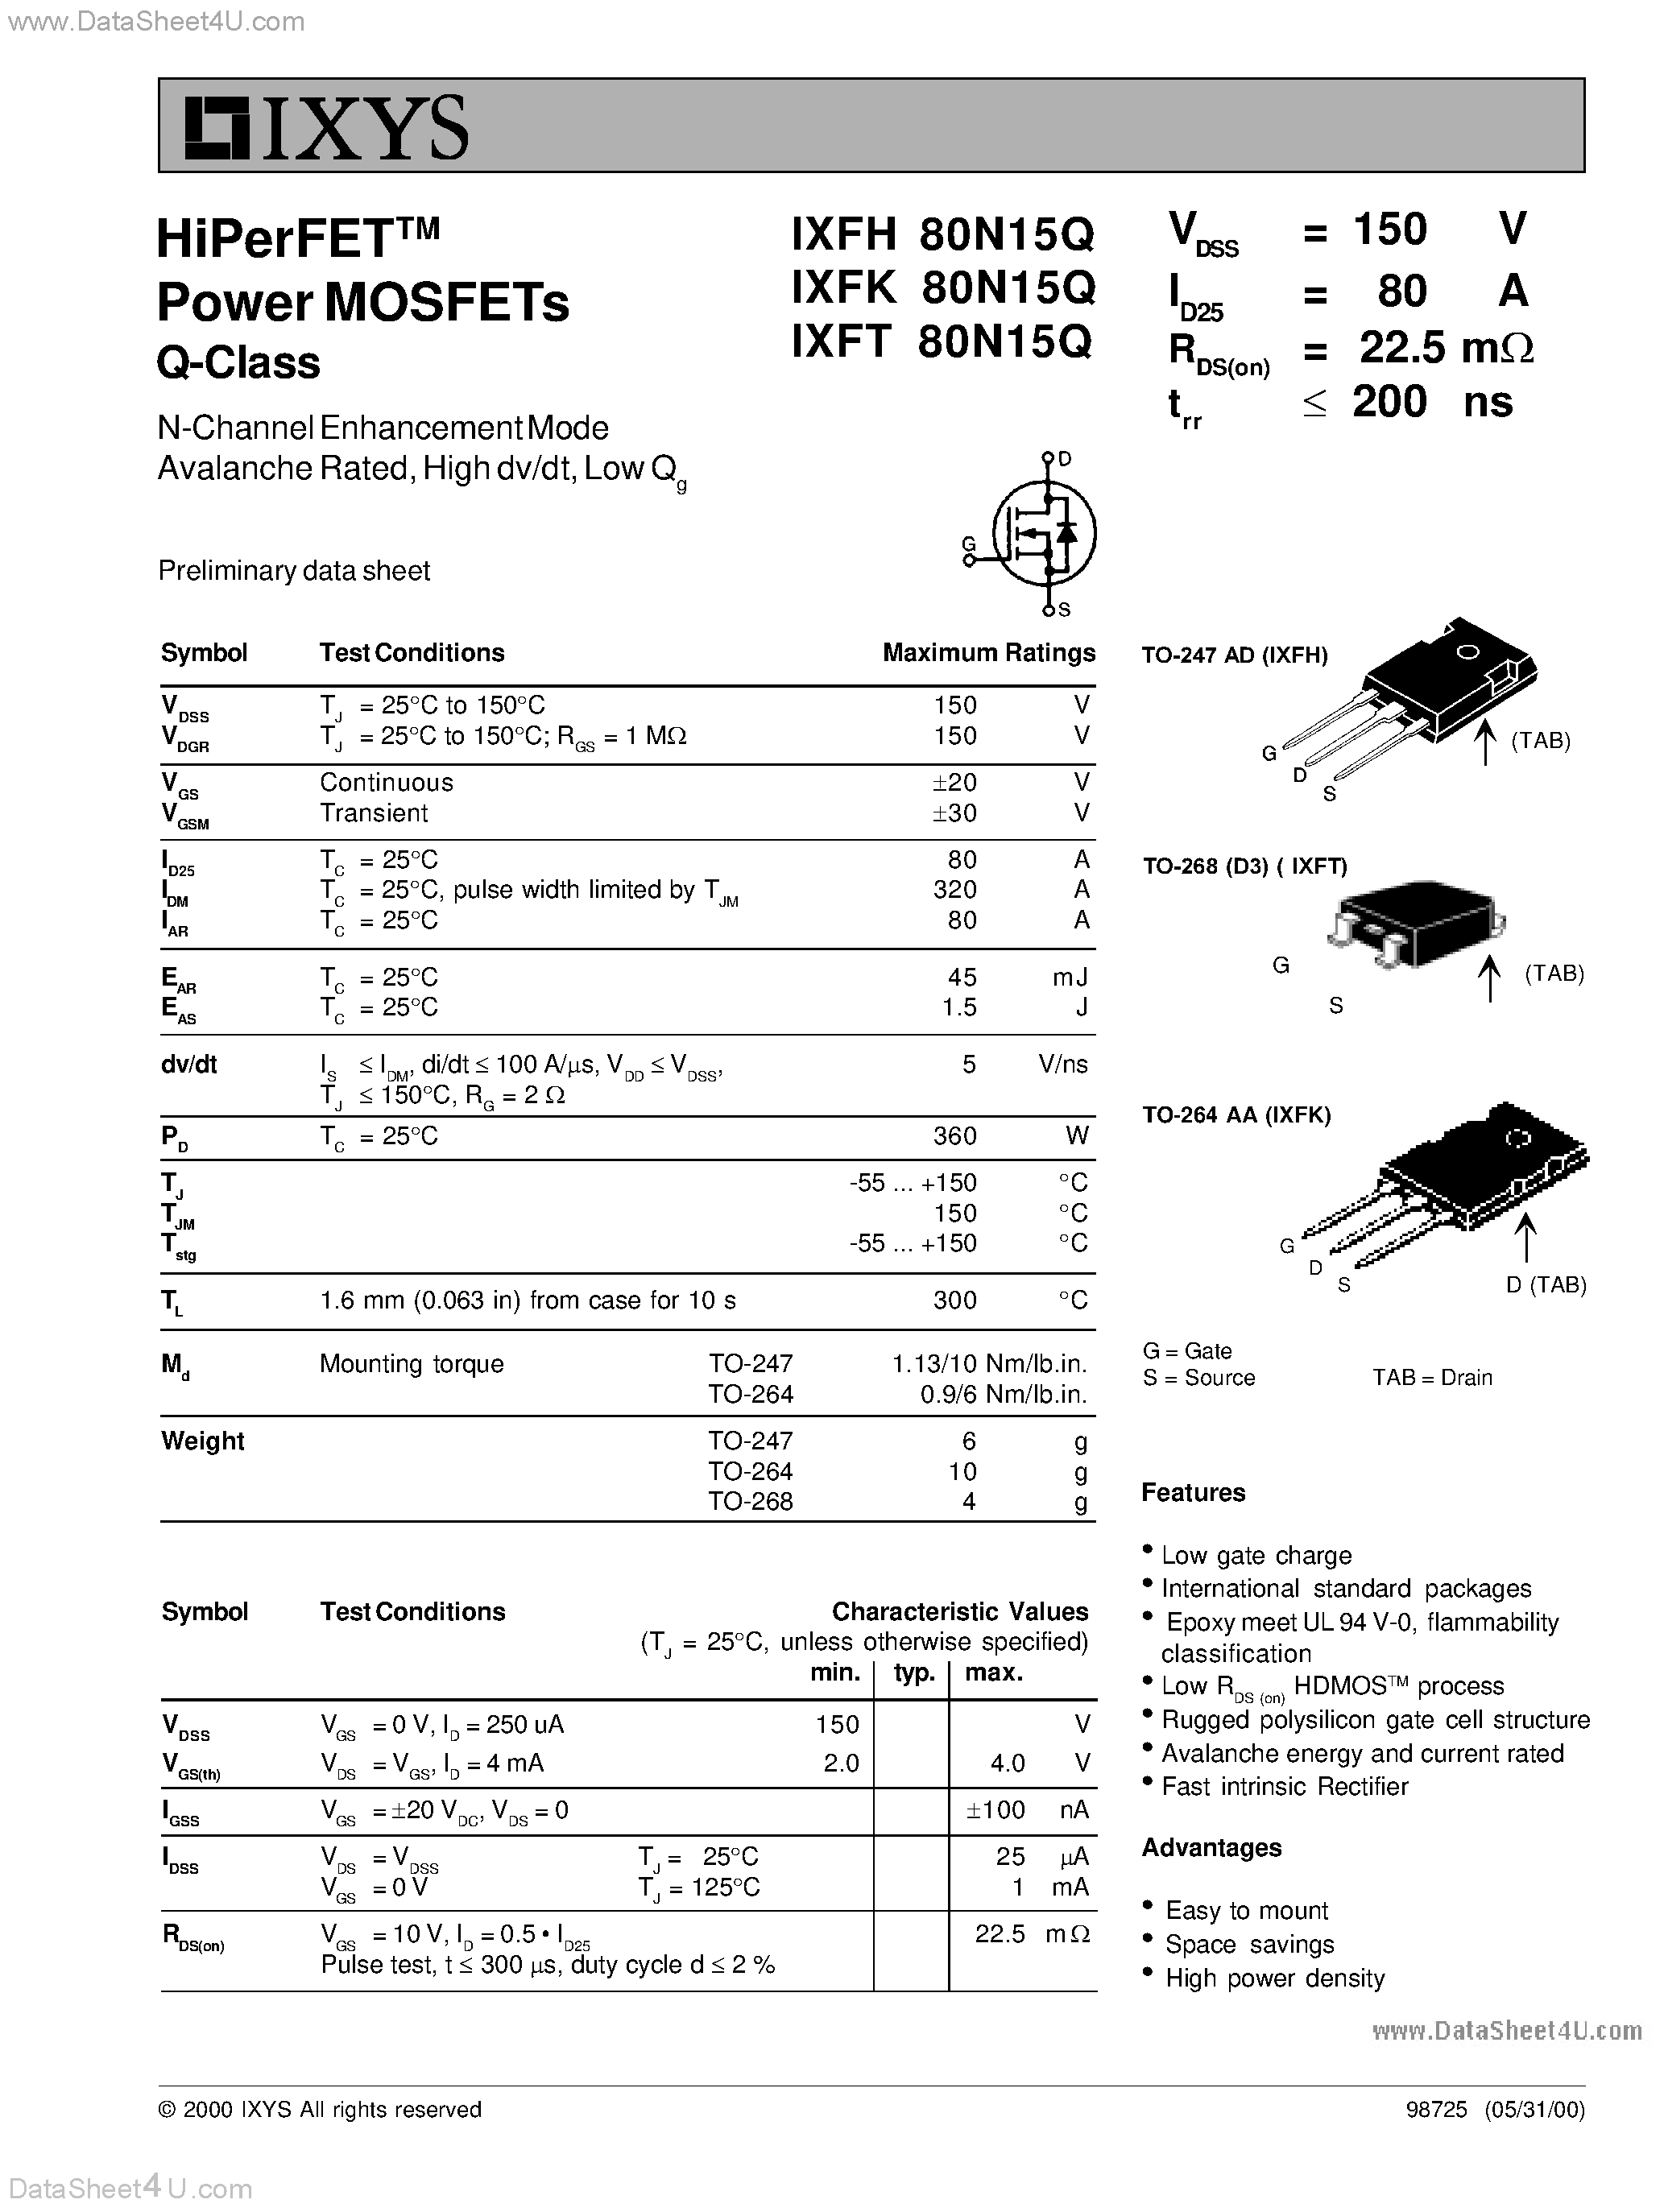 Даташит IXFH80N15Q - (IXFx80N15Q) HiPerFET Power MOSFETs Q-Class страница 1